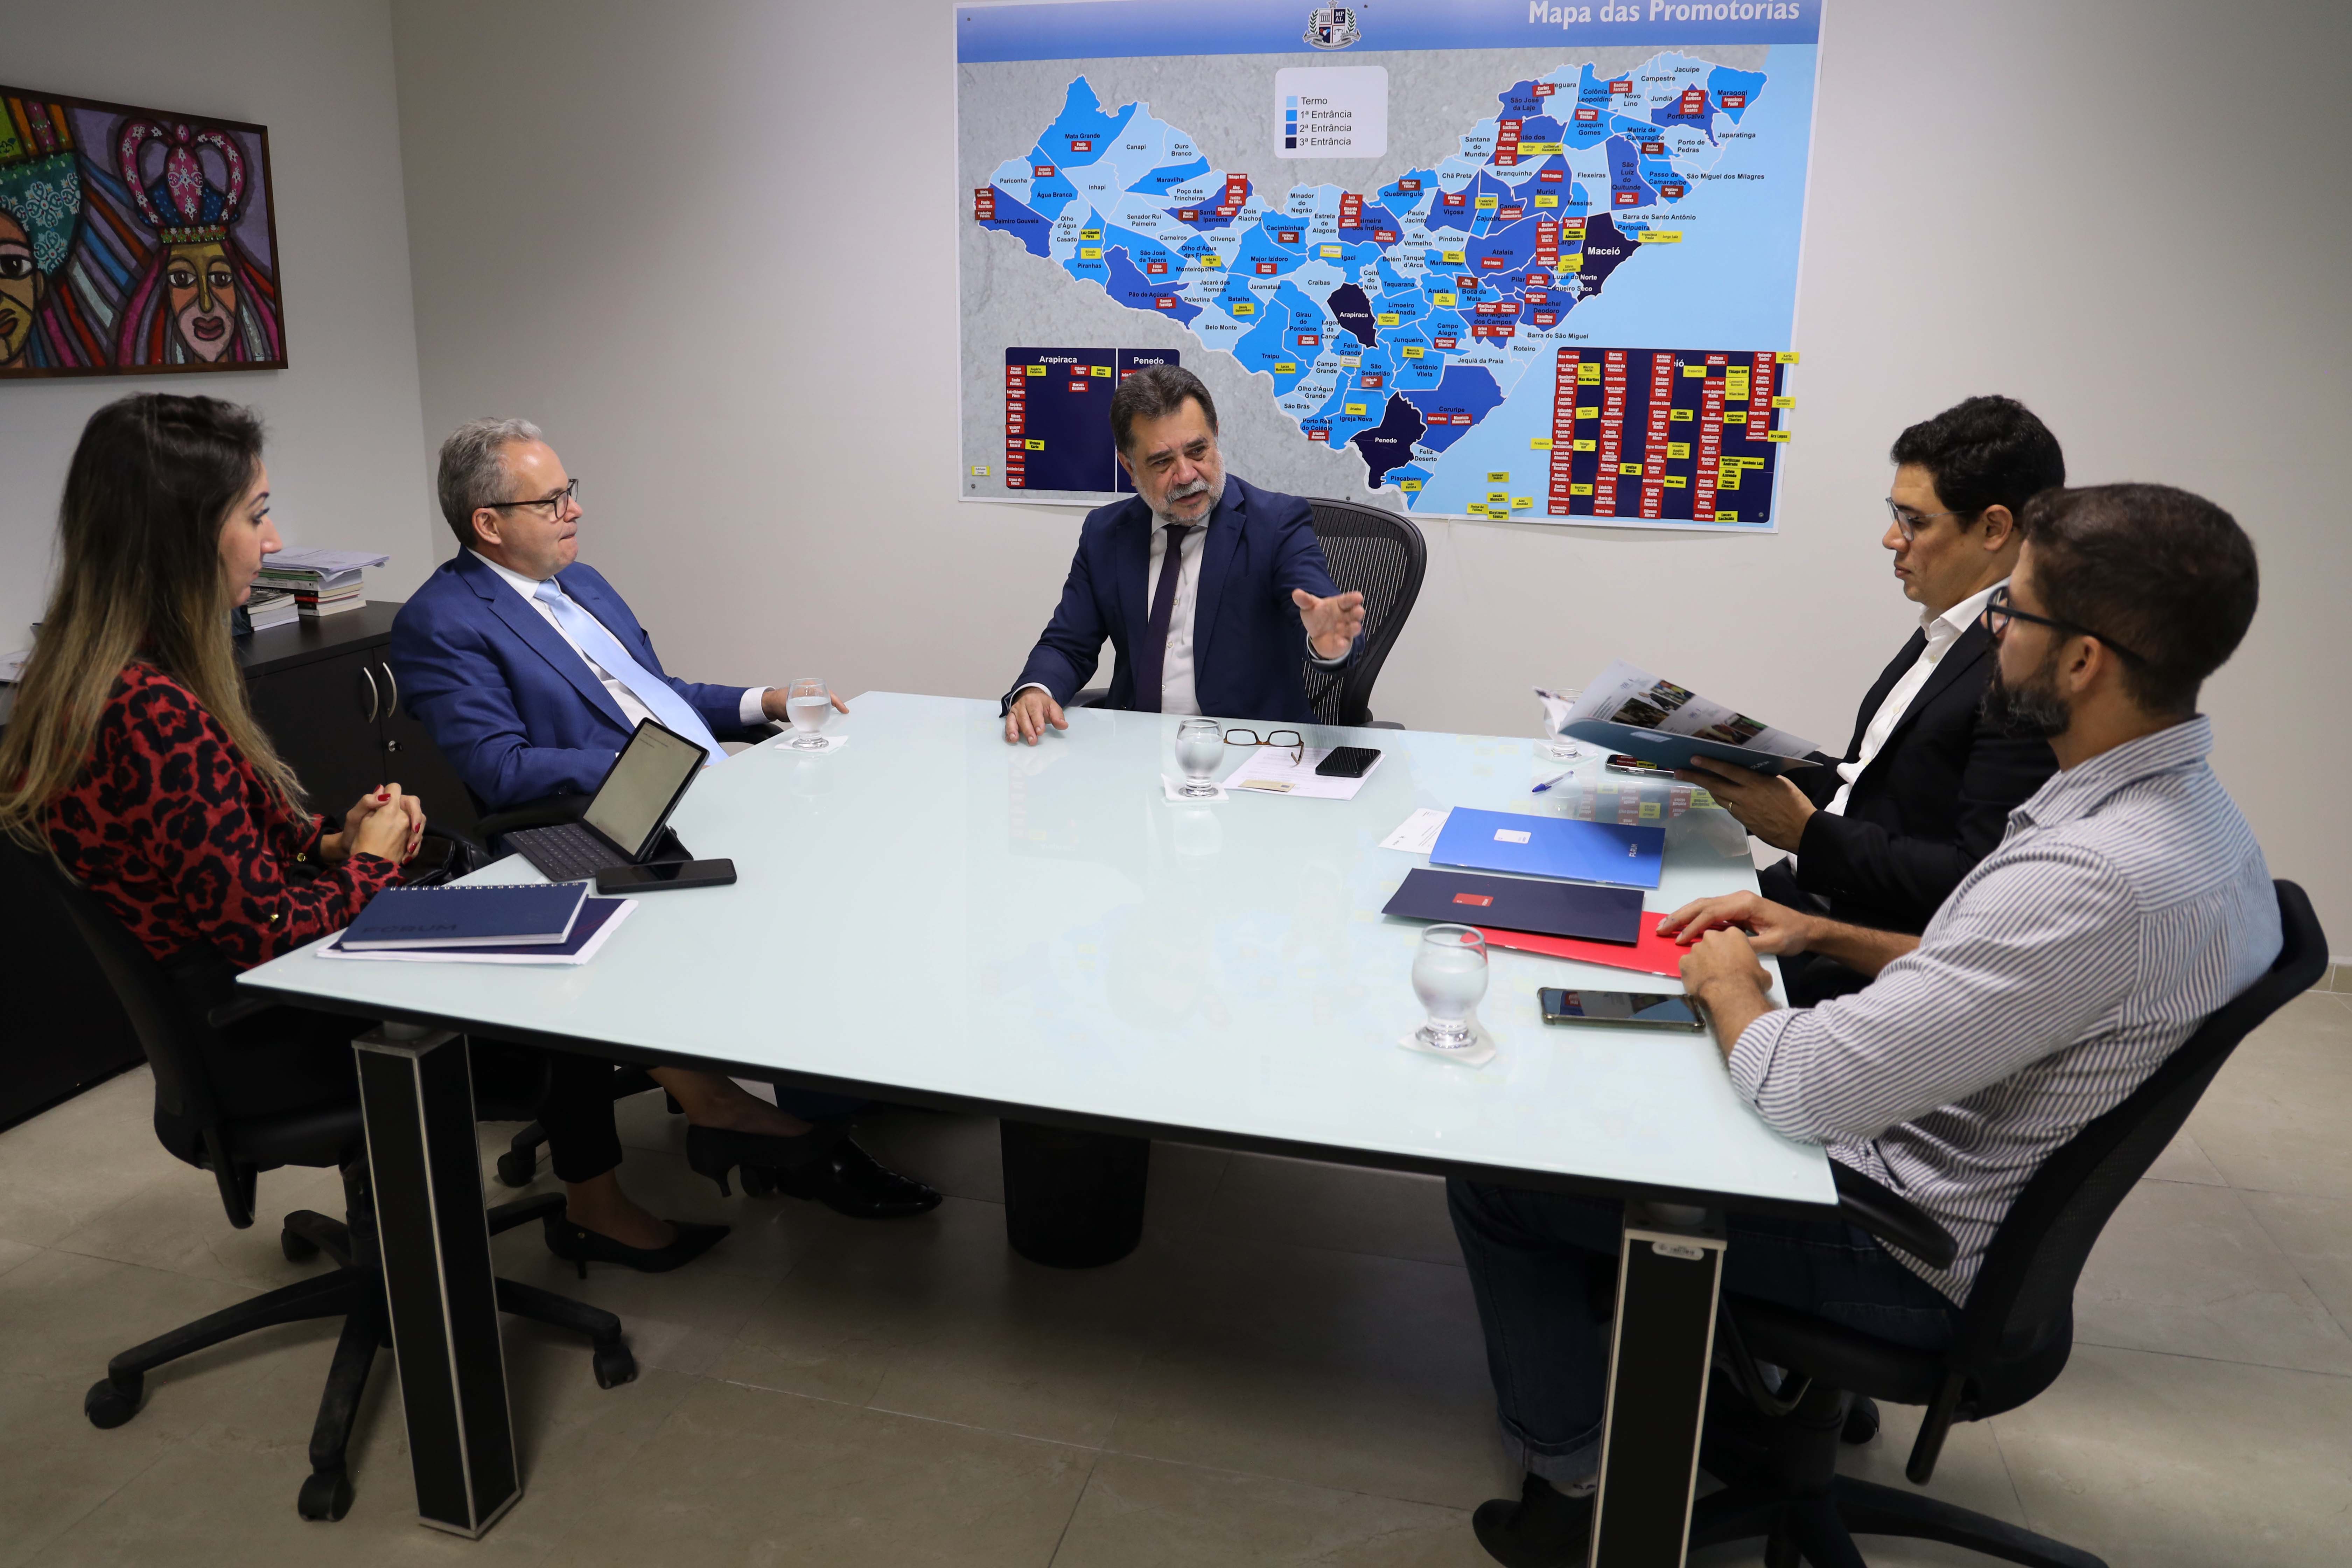 PGJ Lean Araújo realiza reunião com representantes da Editora Fórum